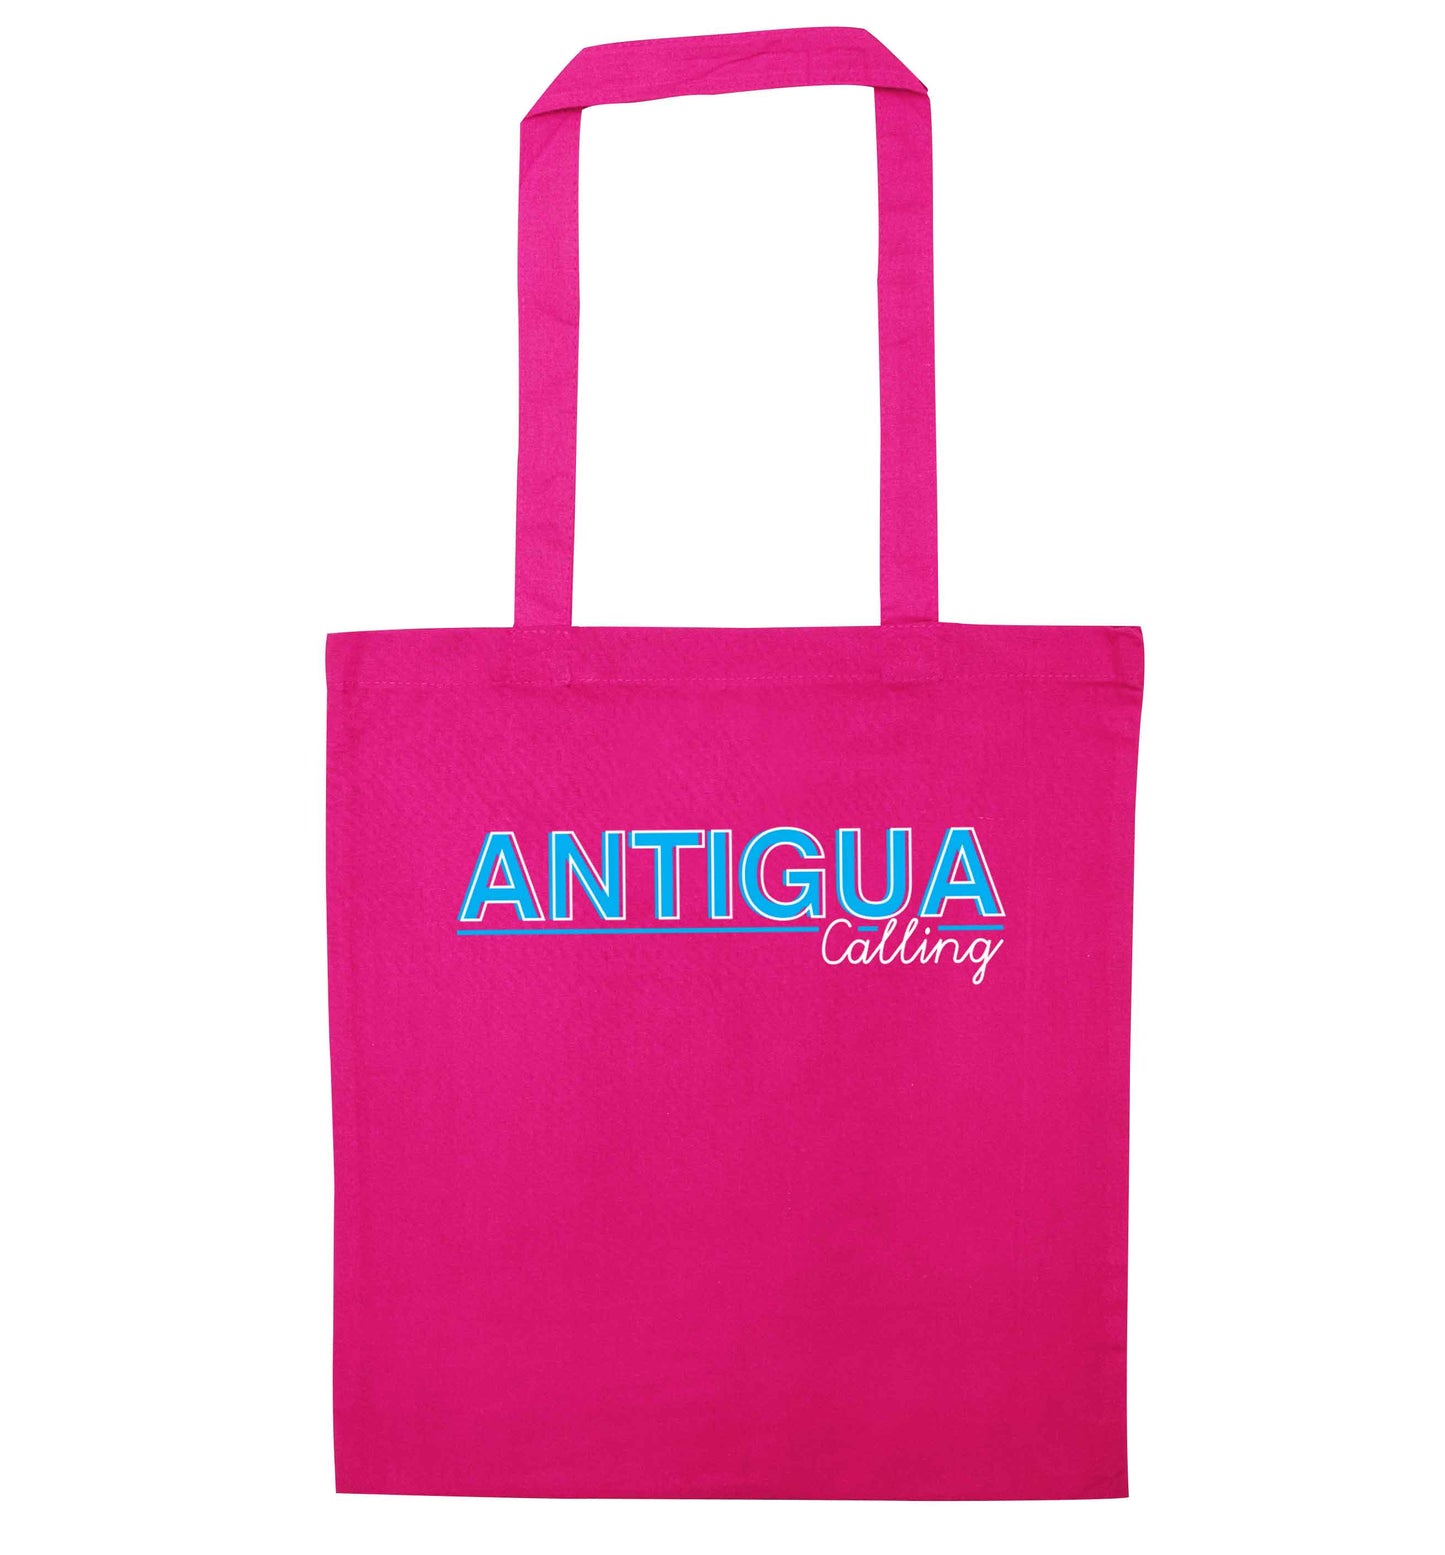 Antigua calling pink tote bag